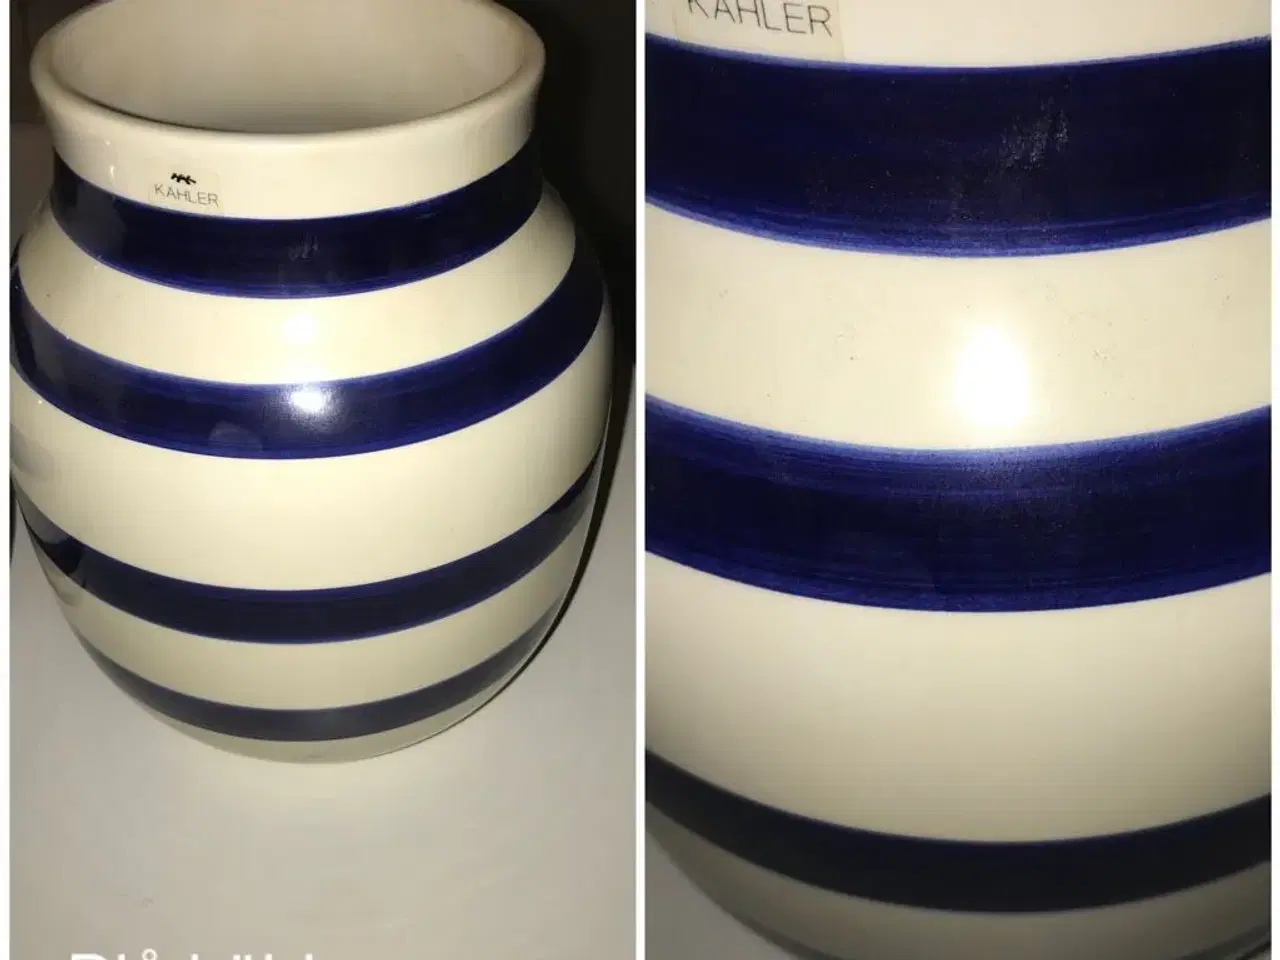 Billede 1 - Blå kähler vase